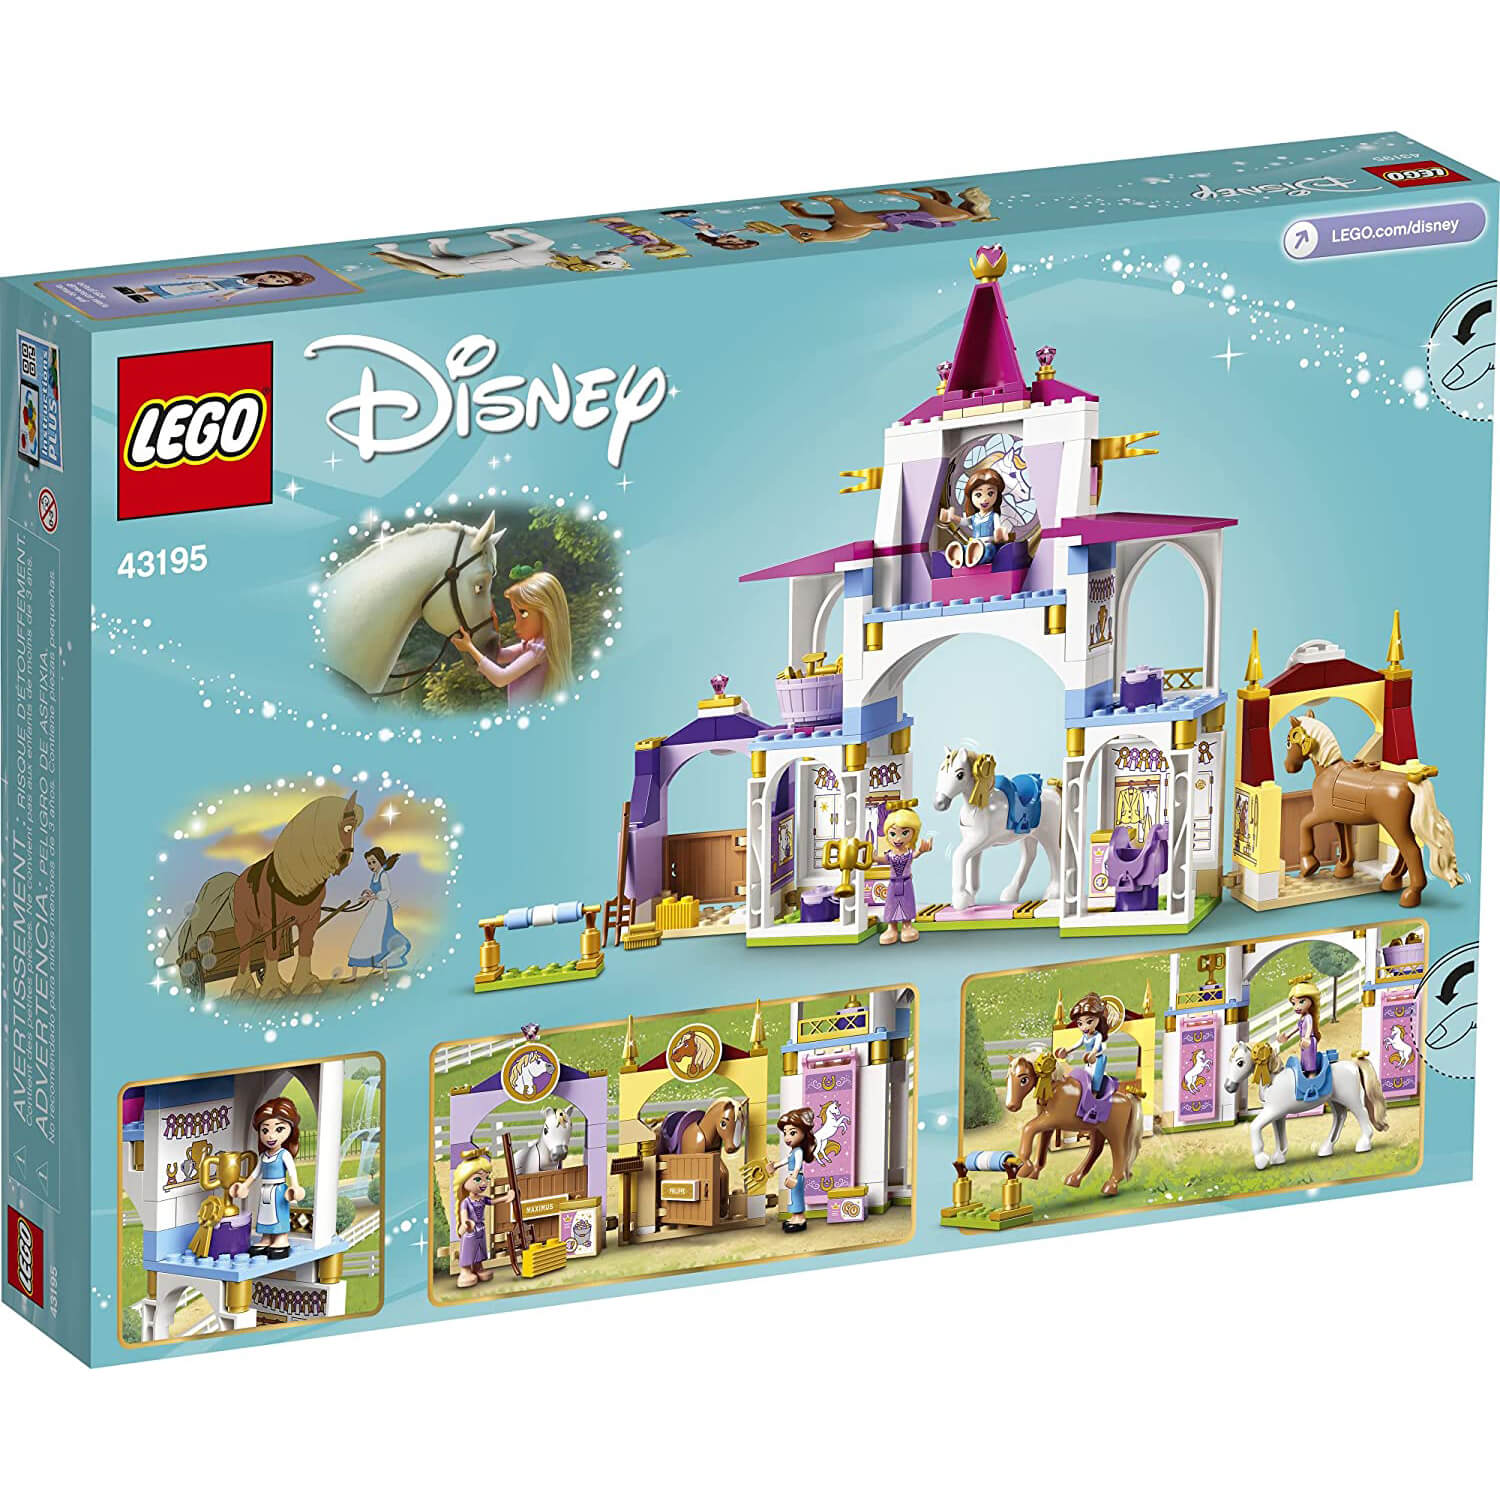 LEGO Disney Princess Belle and Rapunzel's Royal Stables 239 Piece Building Set (43195)